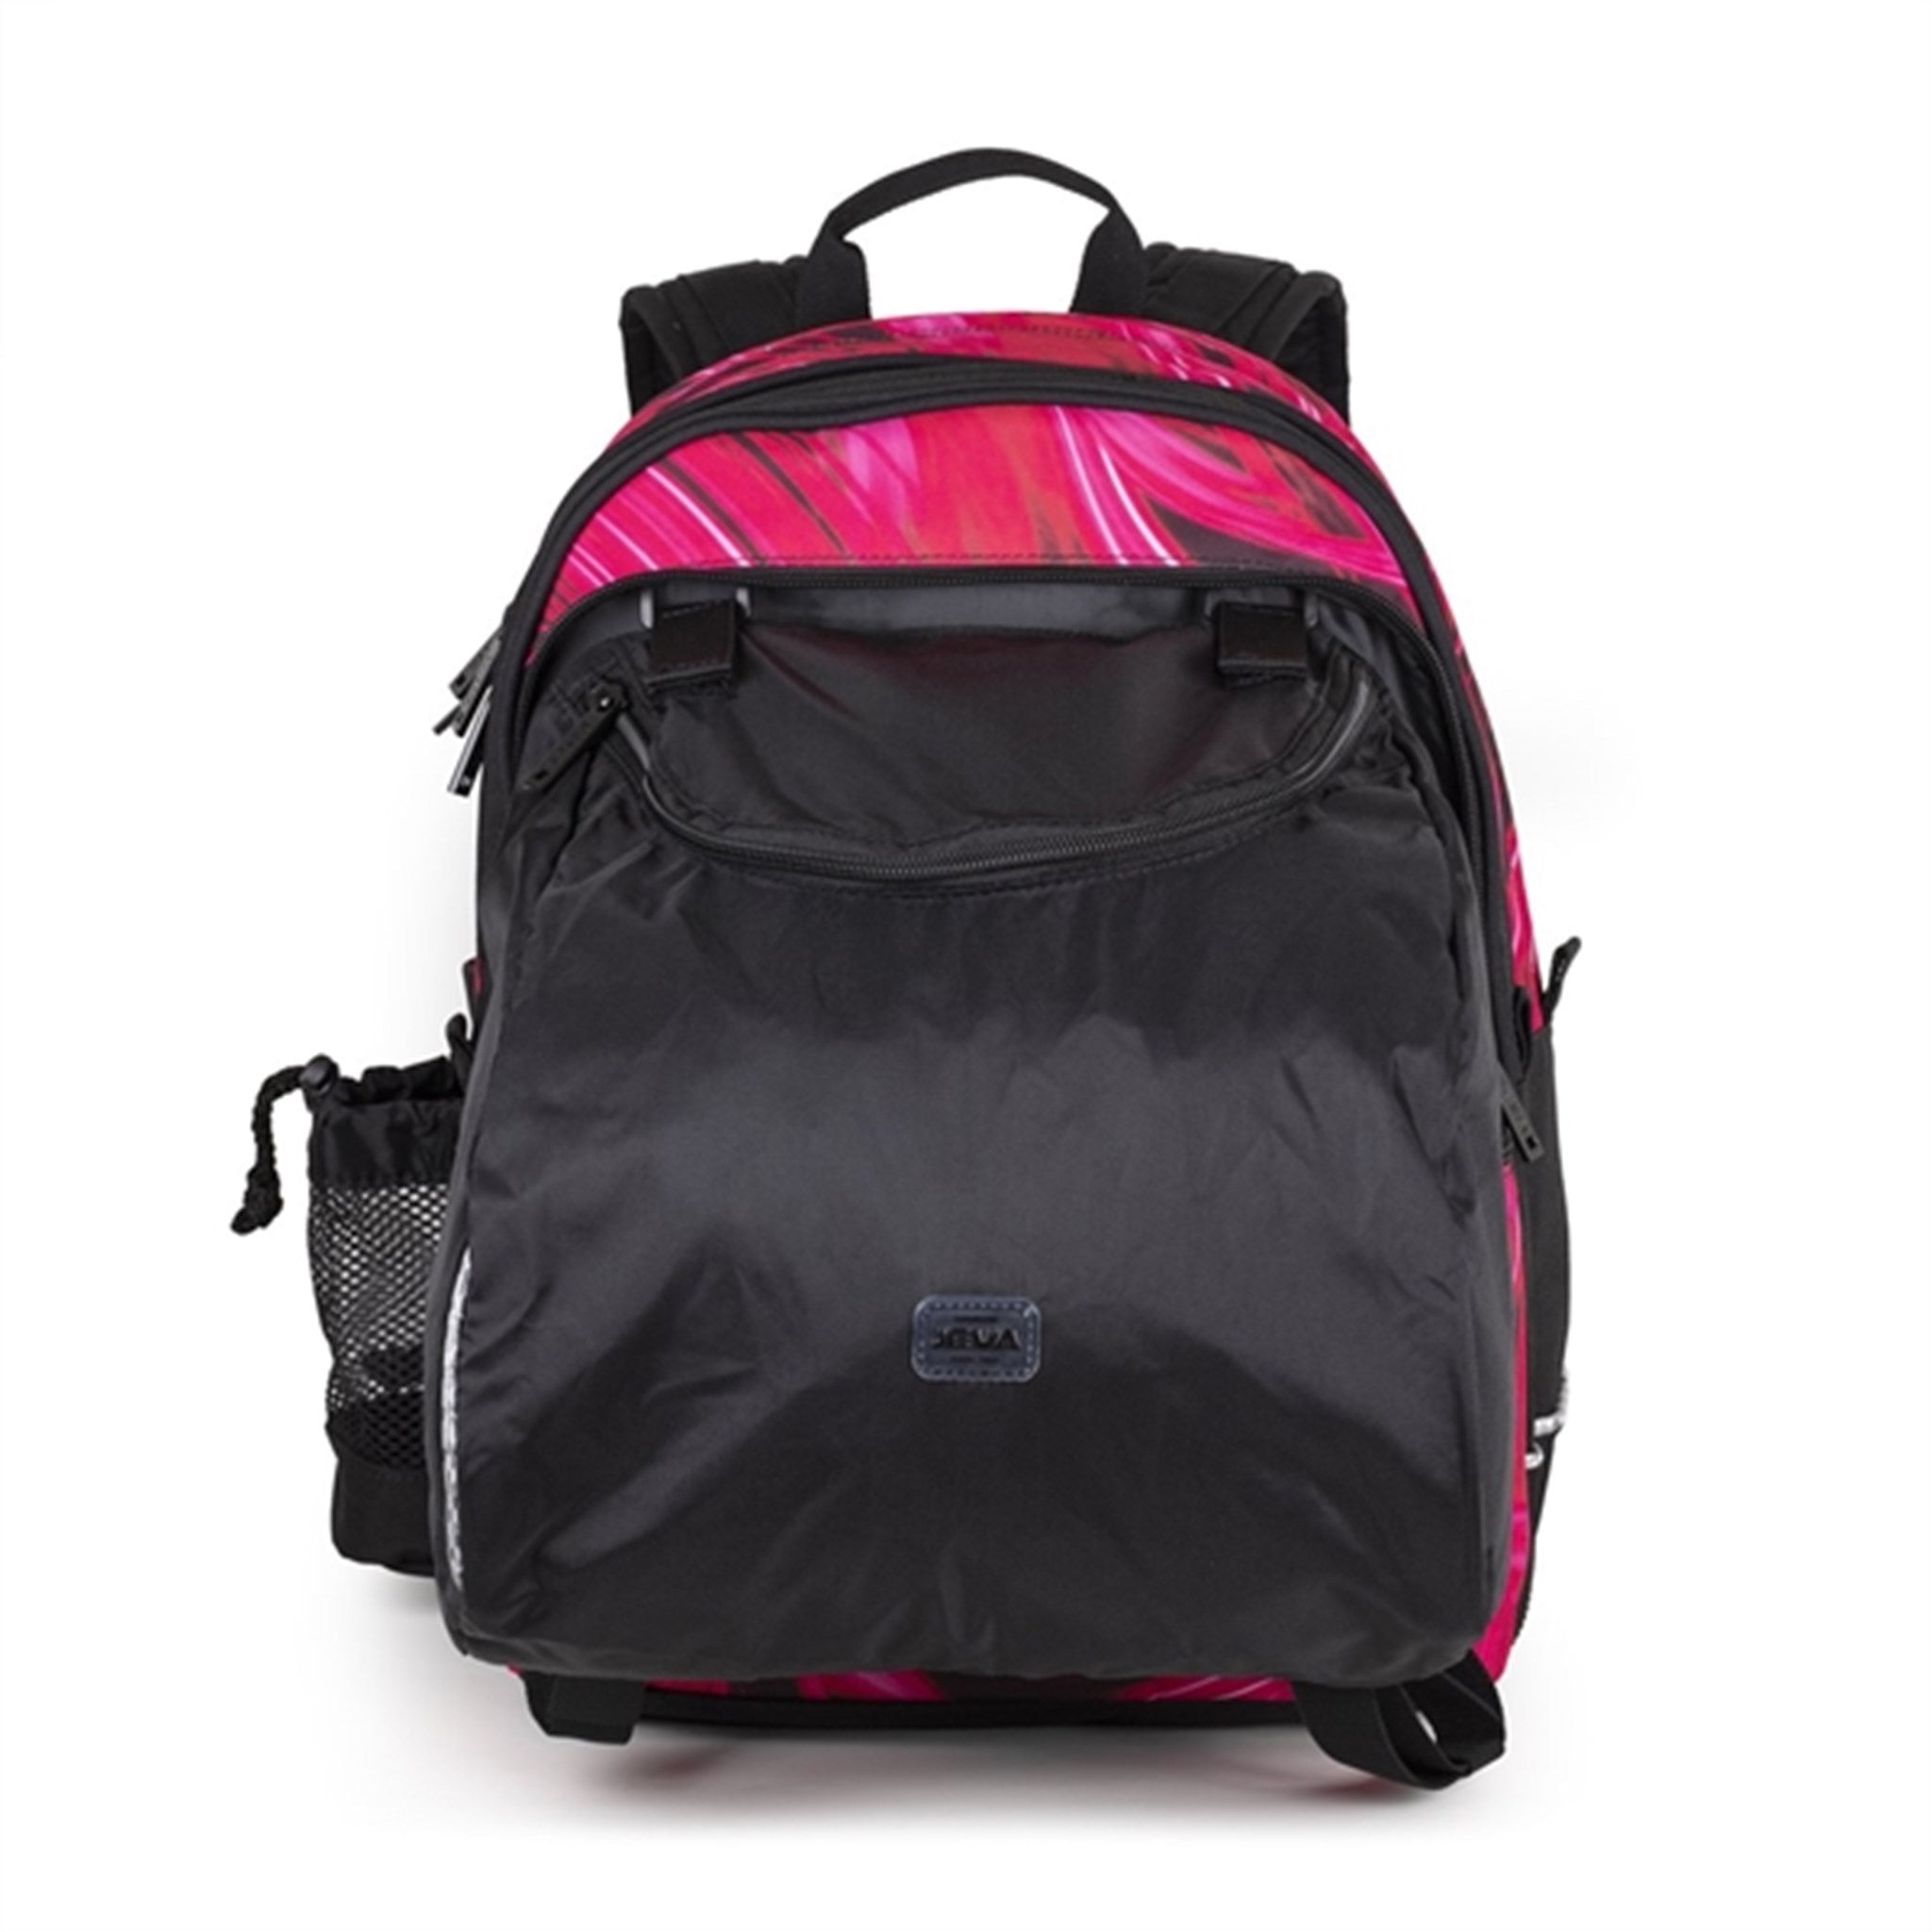 JEVA Backpack Pink Lightning 2